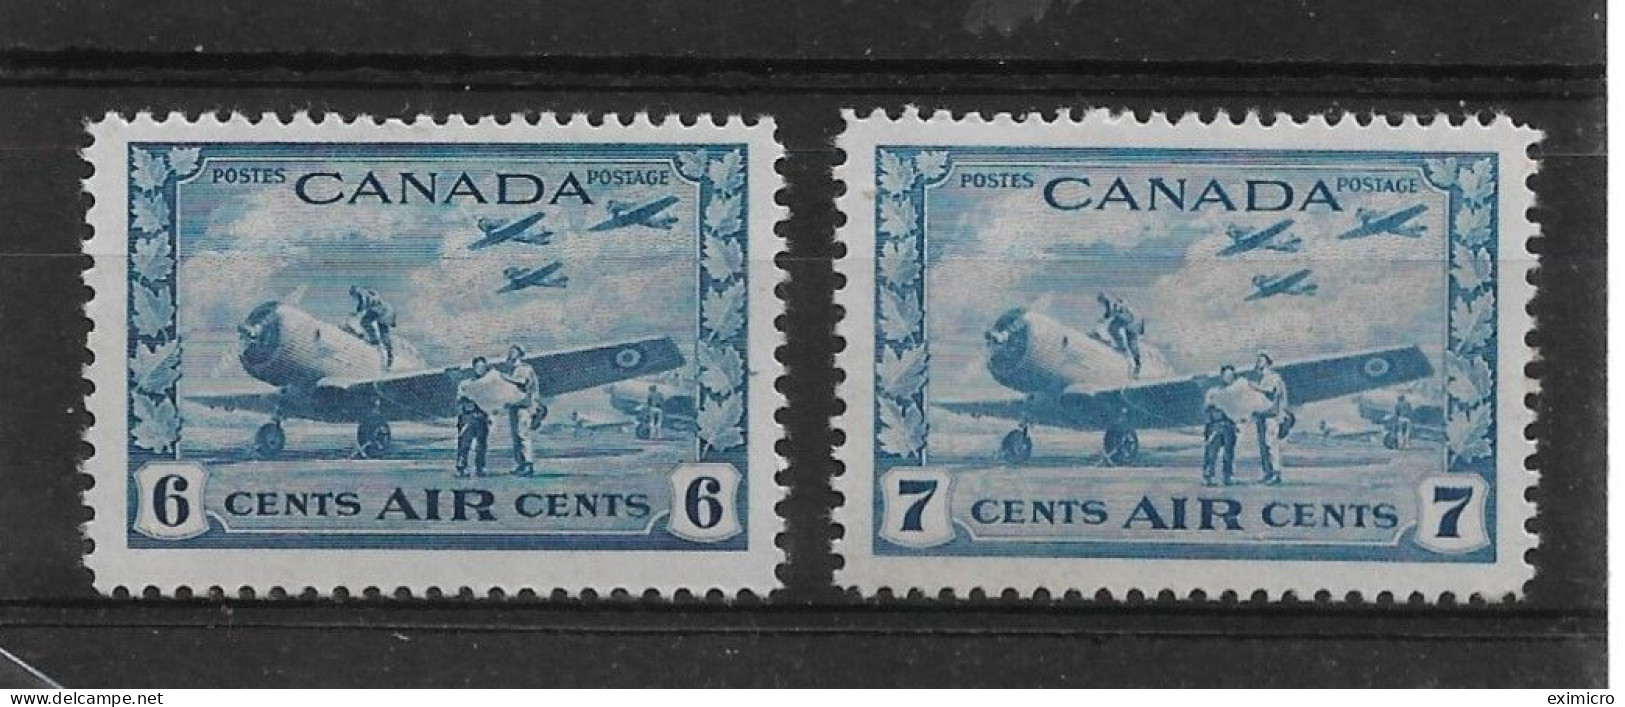 CANADA 1942 - 1943 AIR STAMPS 6c, 7c SG 399/400 UNMOUNTED MINT Cat £37+ - Luftpost